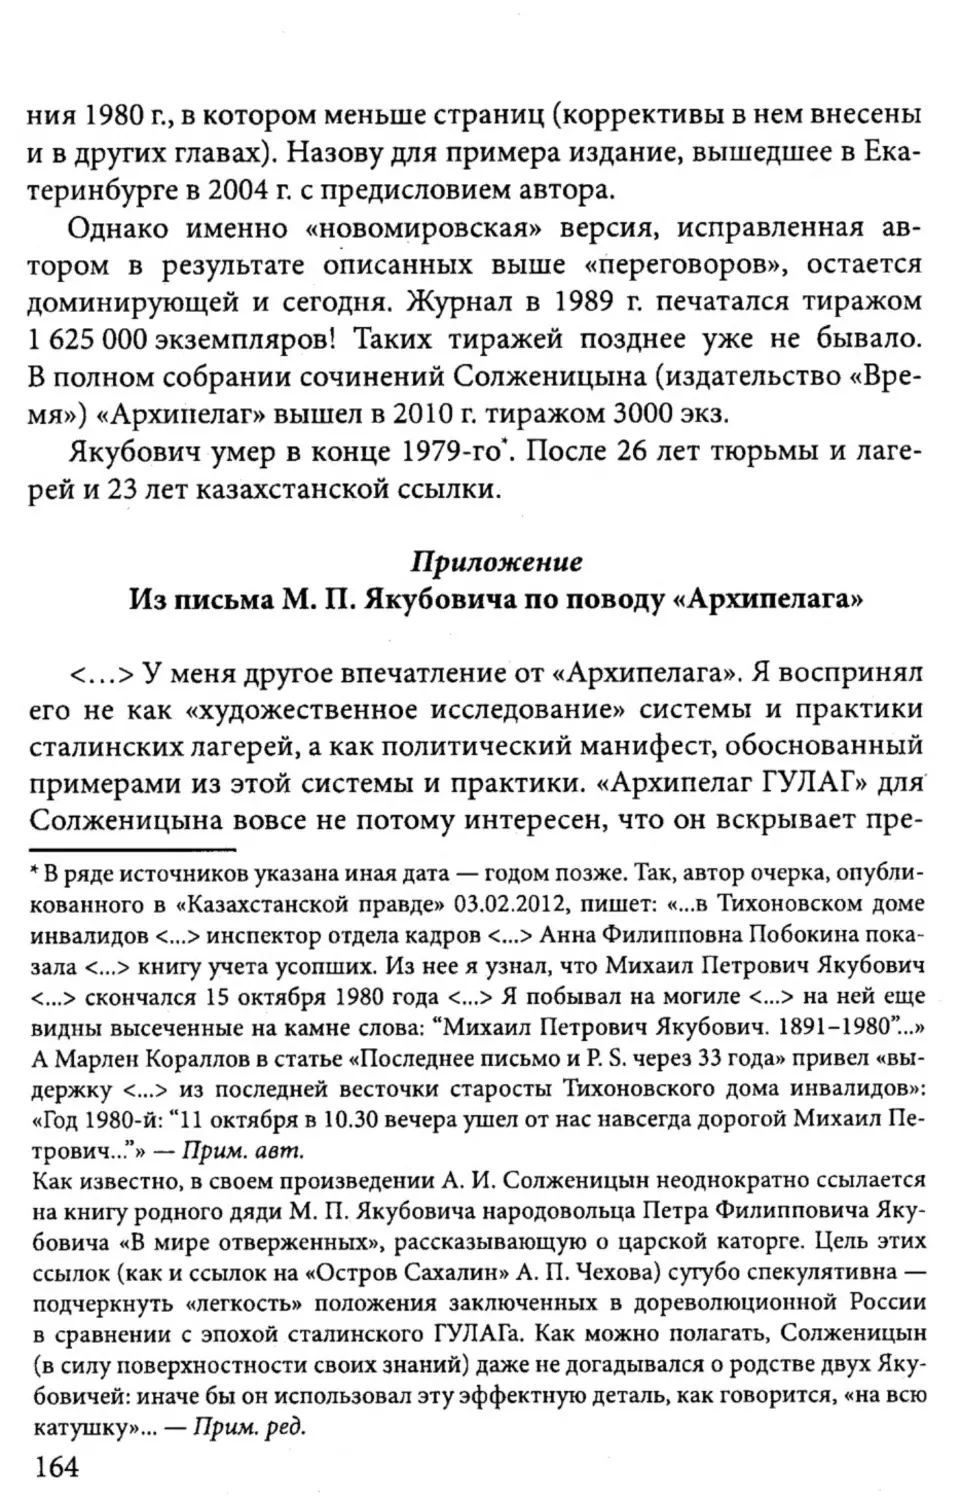 Приложение. Из письма М.П. Якубовича по поводу  «Архипелага»